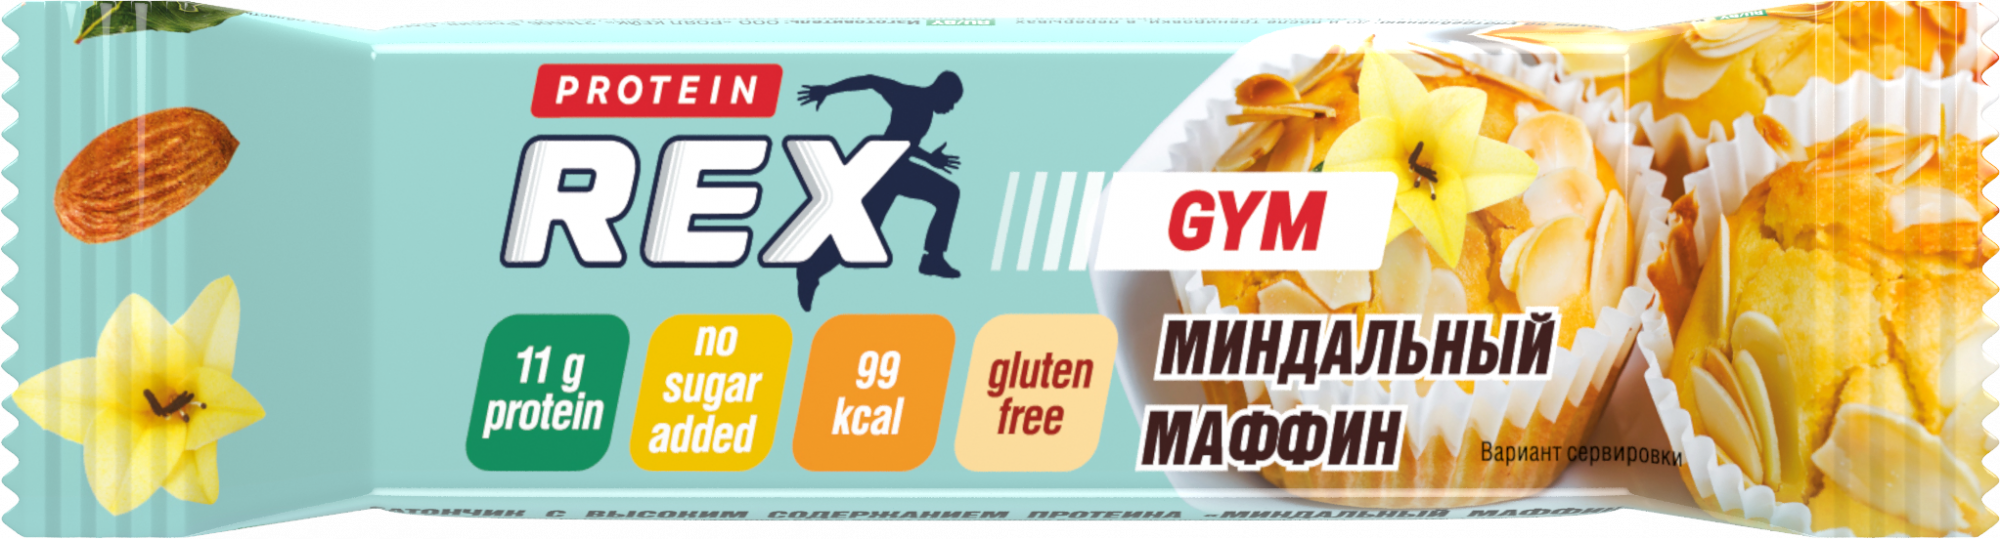 Купить батончик ProteinRex Gym протеиновый, миндальный маффин, 35 г, цены на Мегамаркет | Артикул: 100024350902